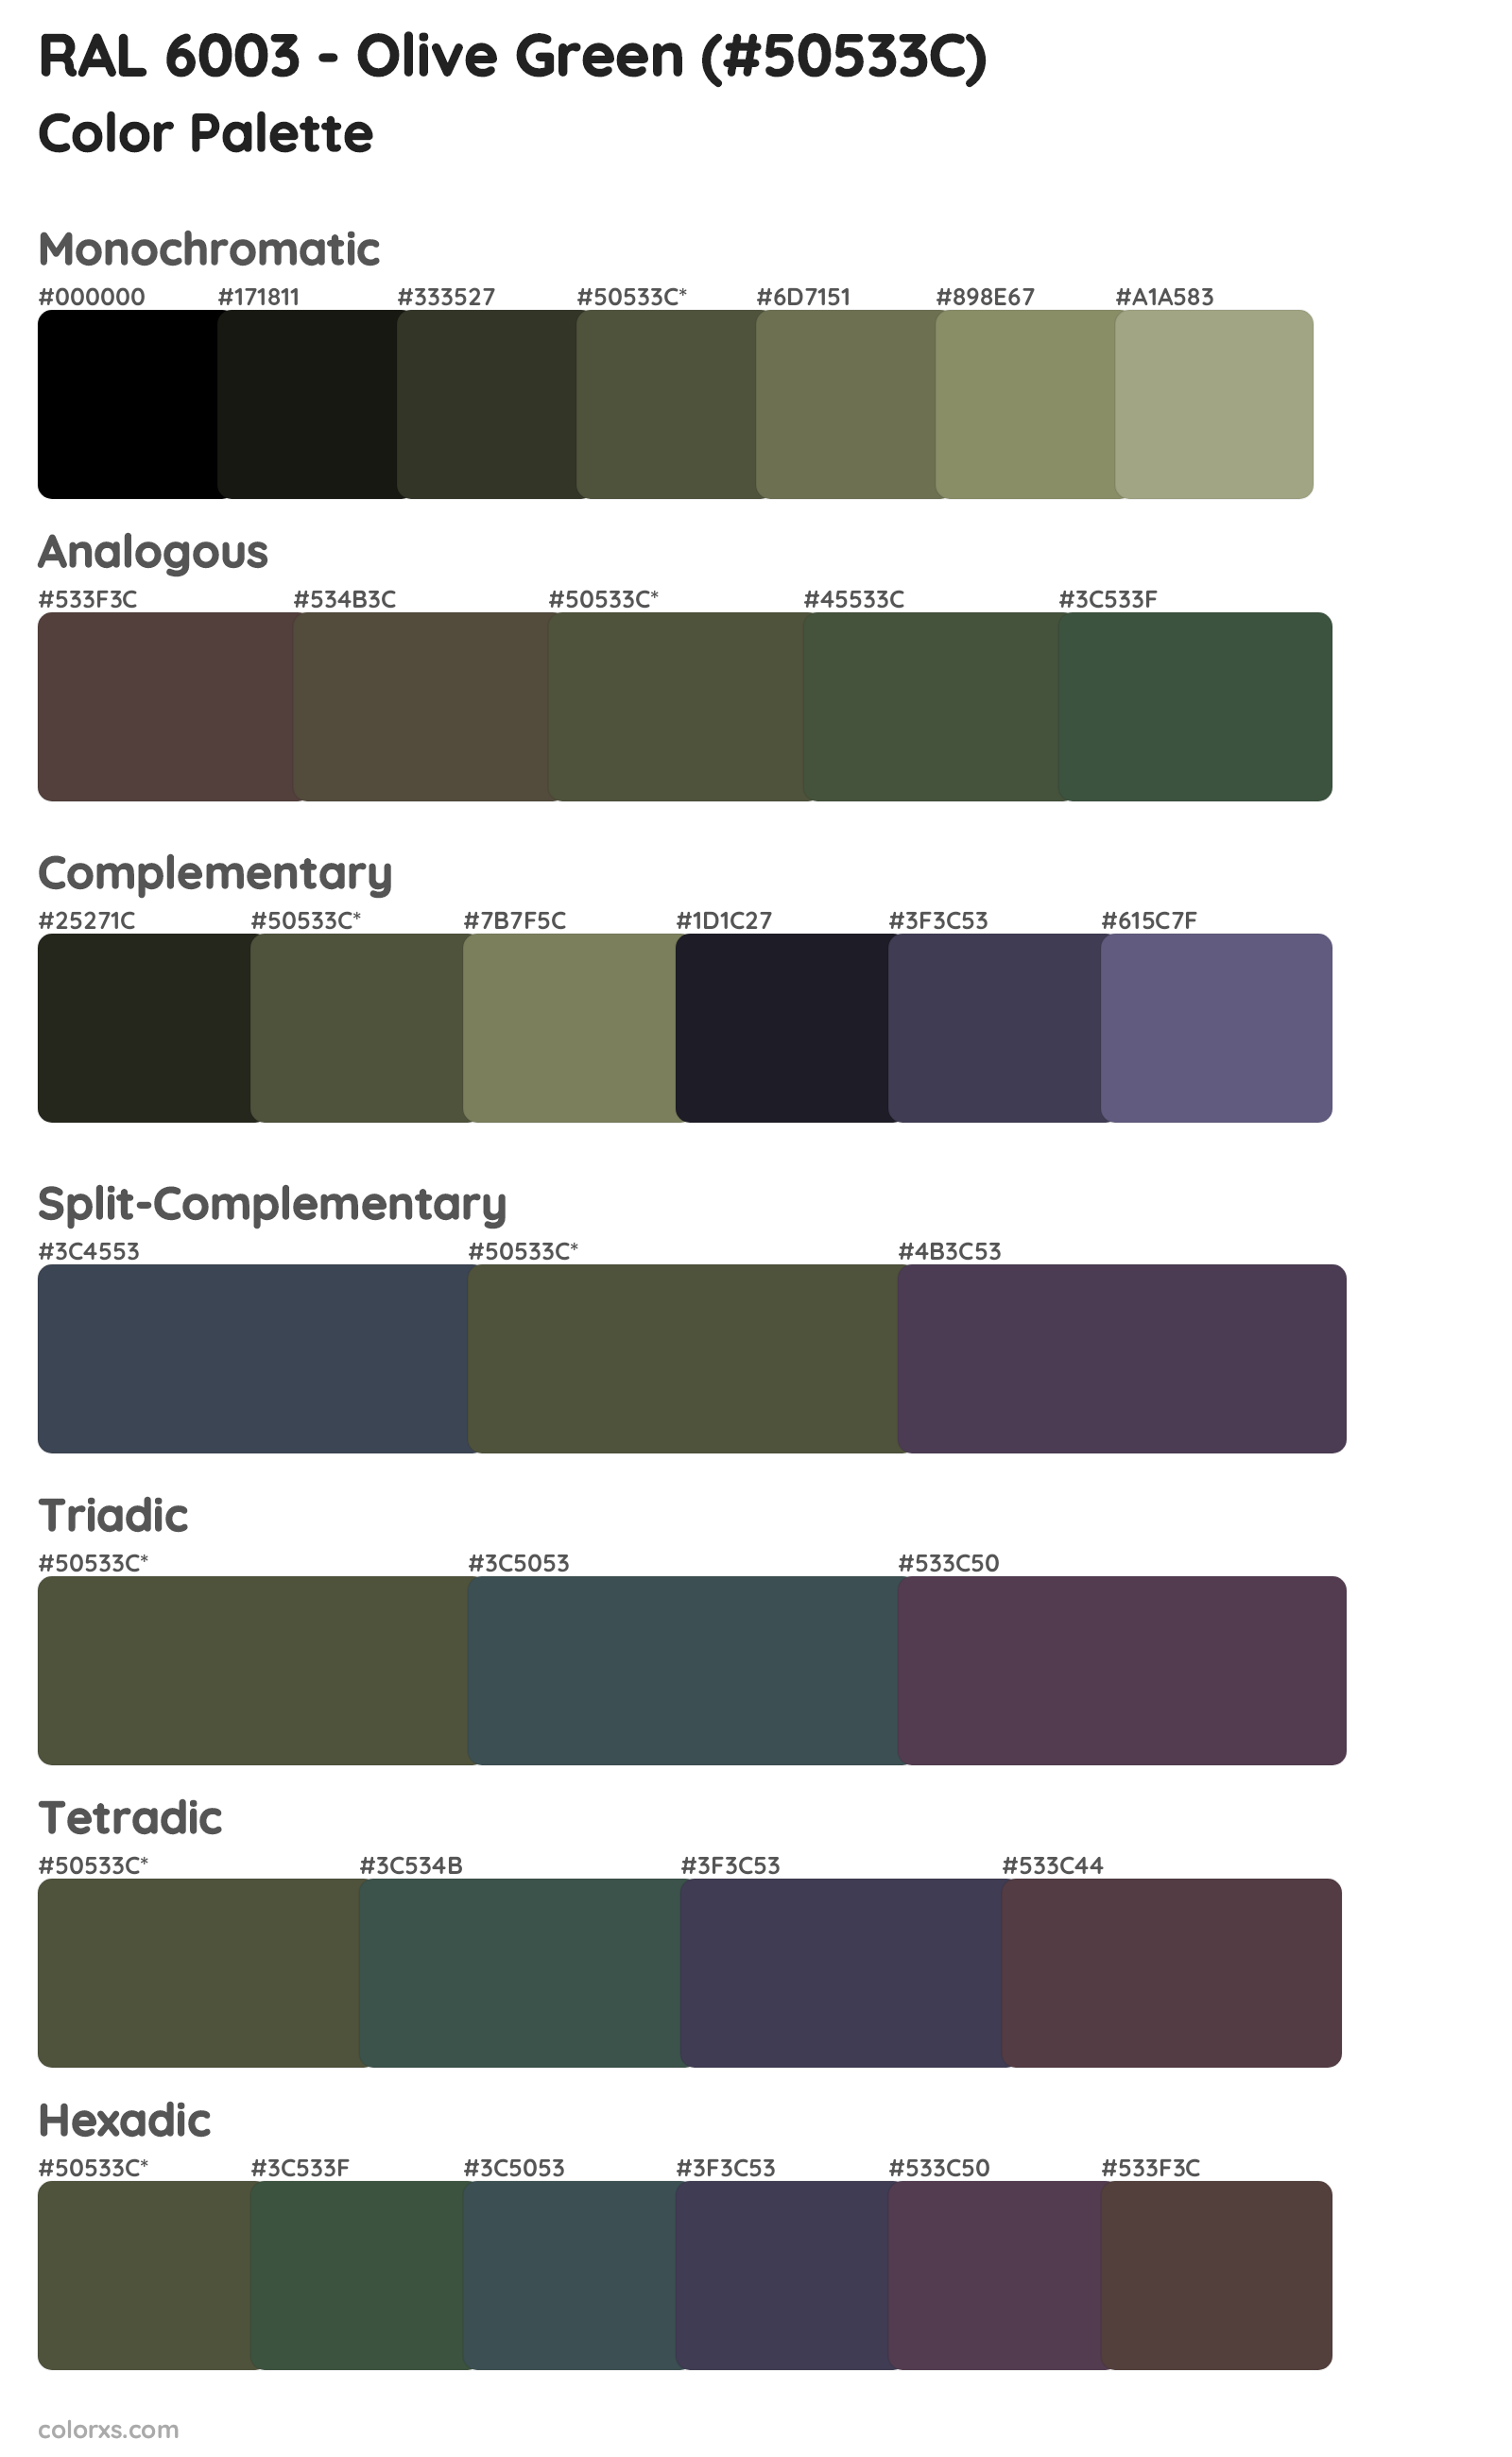 RAL 6003 - Olive Green Color Scheme Palettes